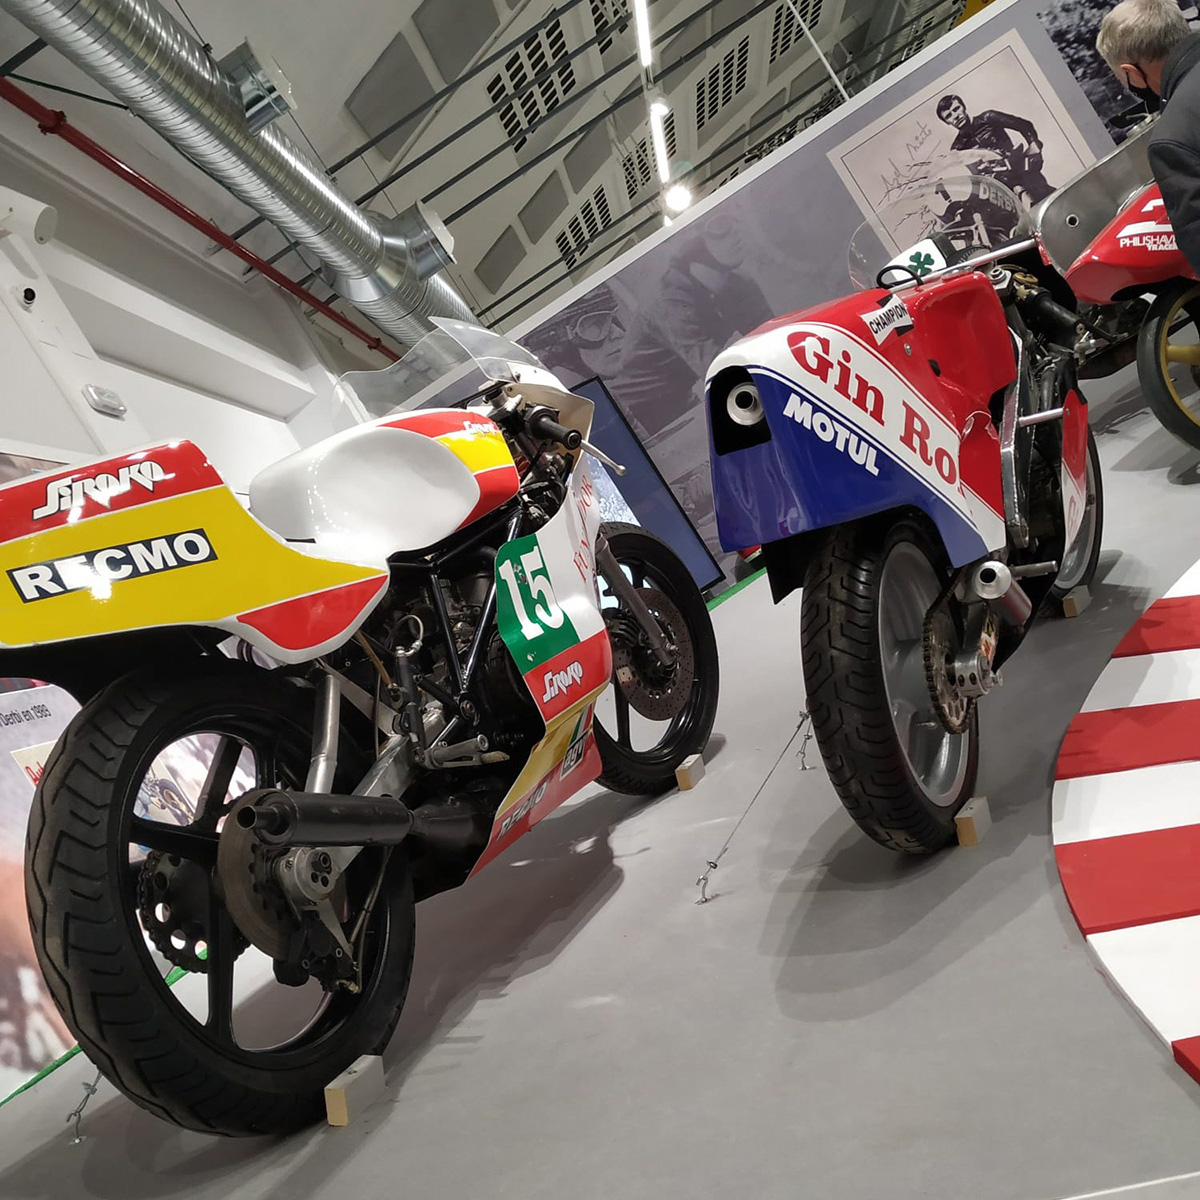 La exposición Motos Made in Spain también cuenta con algunas increíbles motos de competición españolas